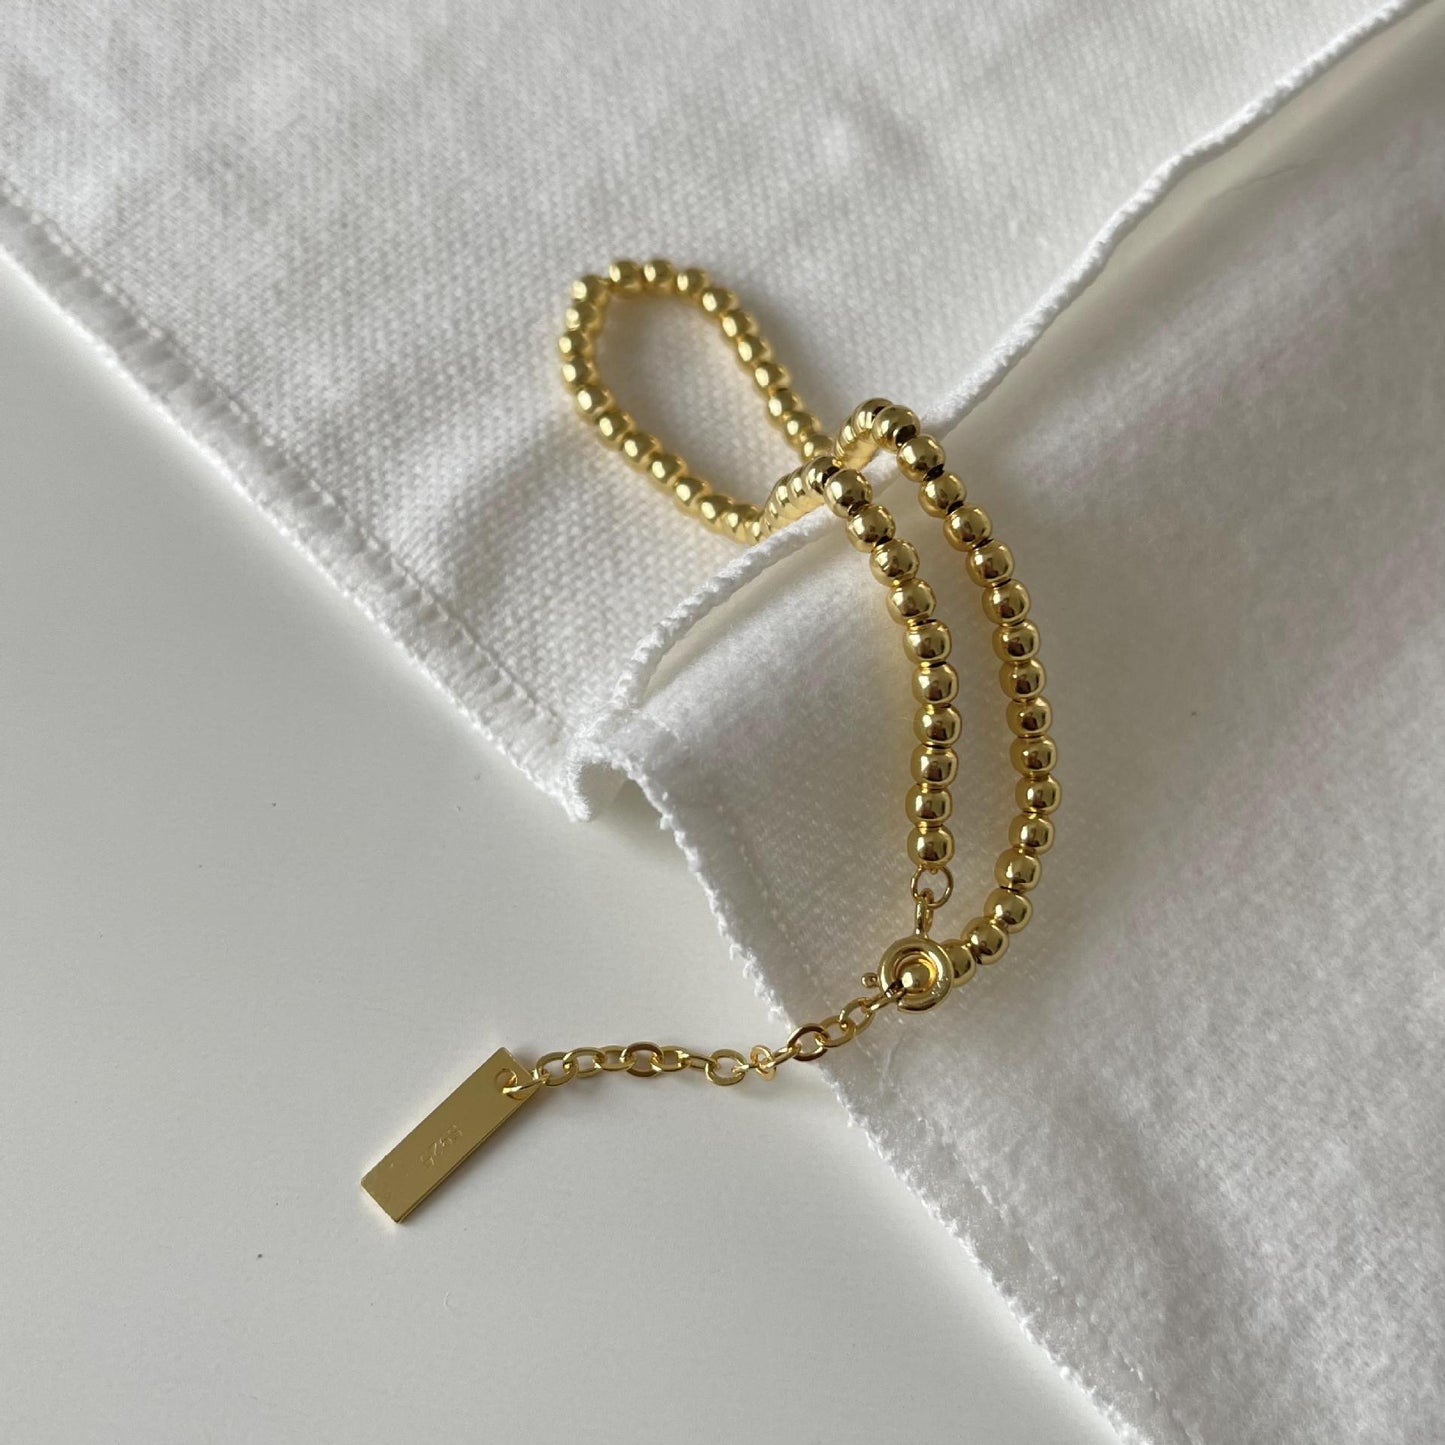 Round Beads Gold Beads Bracelet Minimalist INS Jewelry